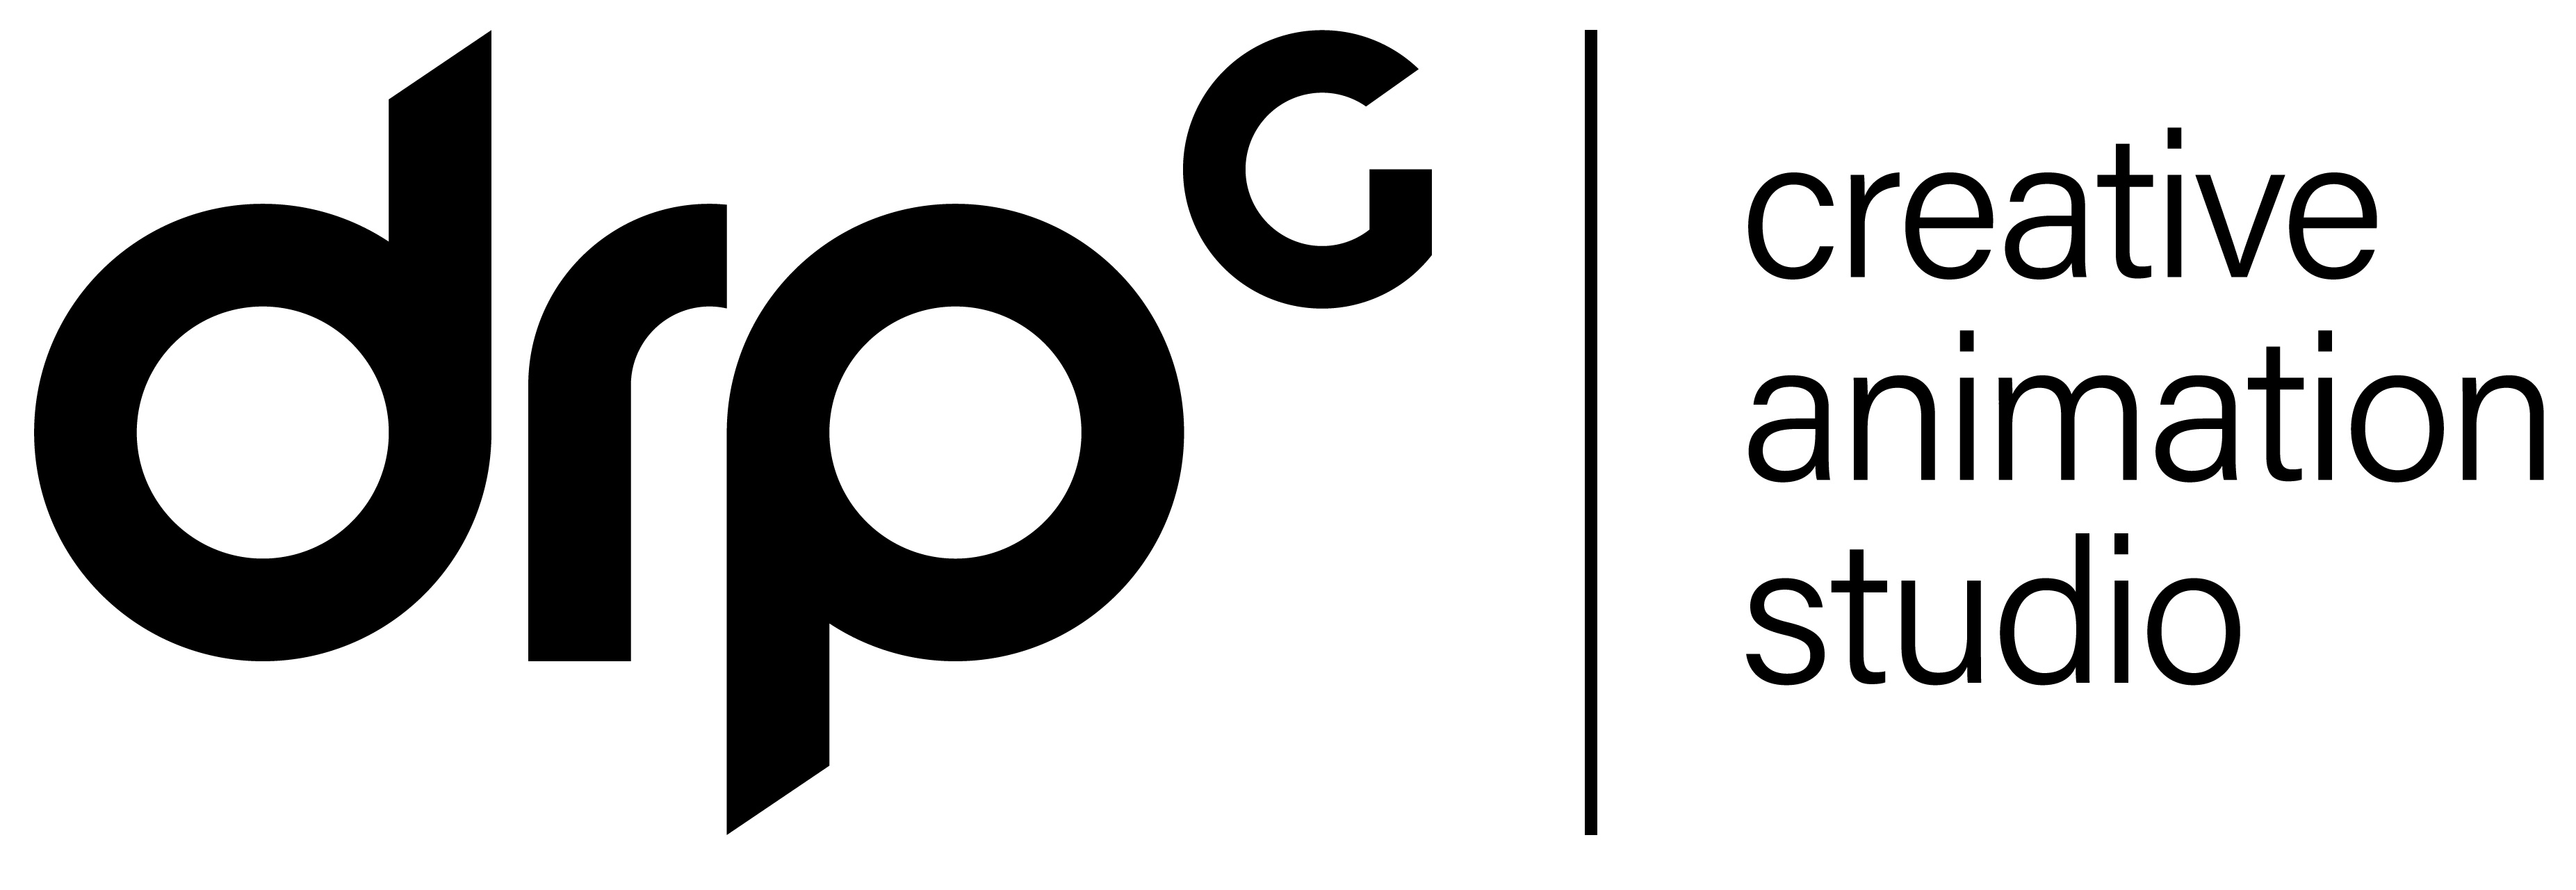 DRPG logo